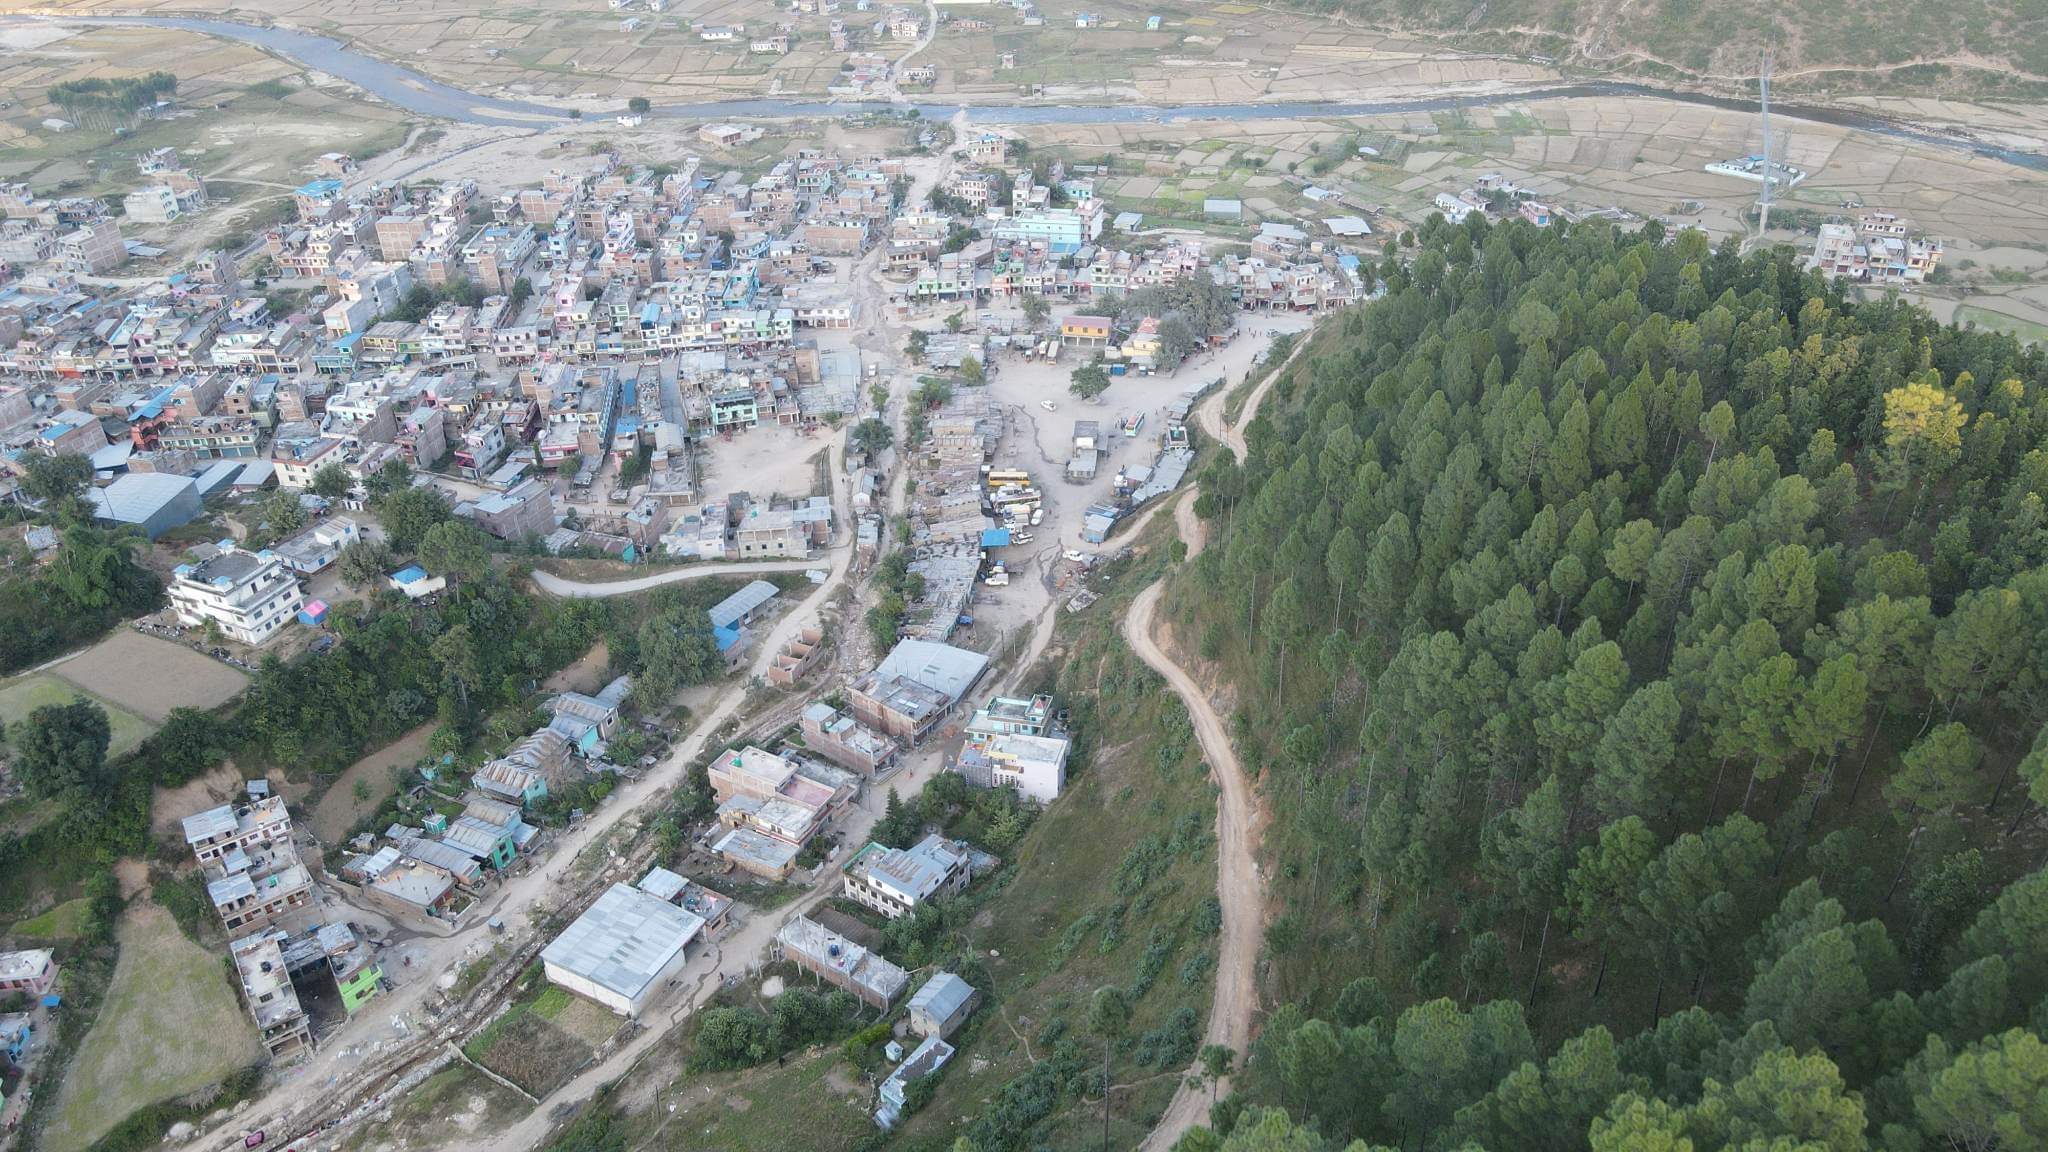 श्रीनगर बसपार्क एरियामा रहेका घर टहरा हटाउन ३ दिन बाकी रहदा नगरको अर्को सूचना